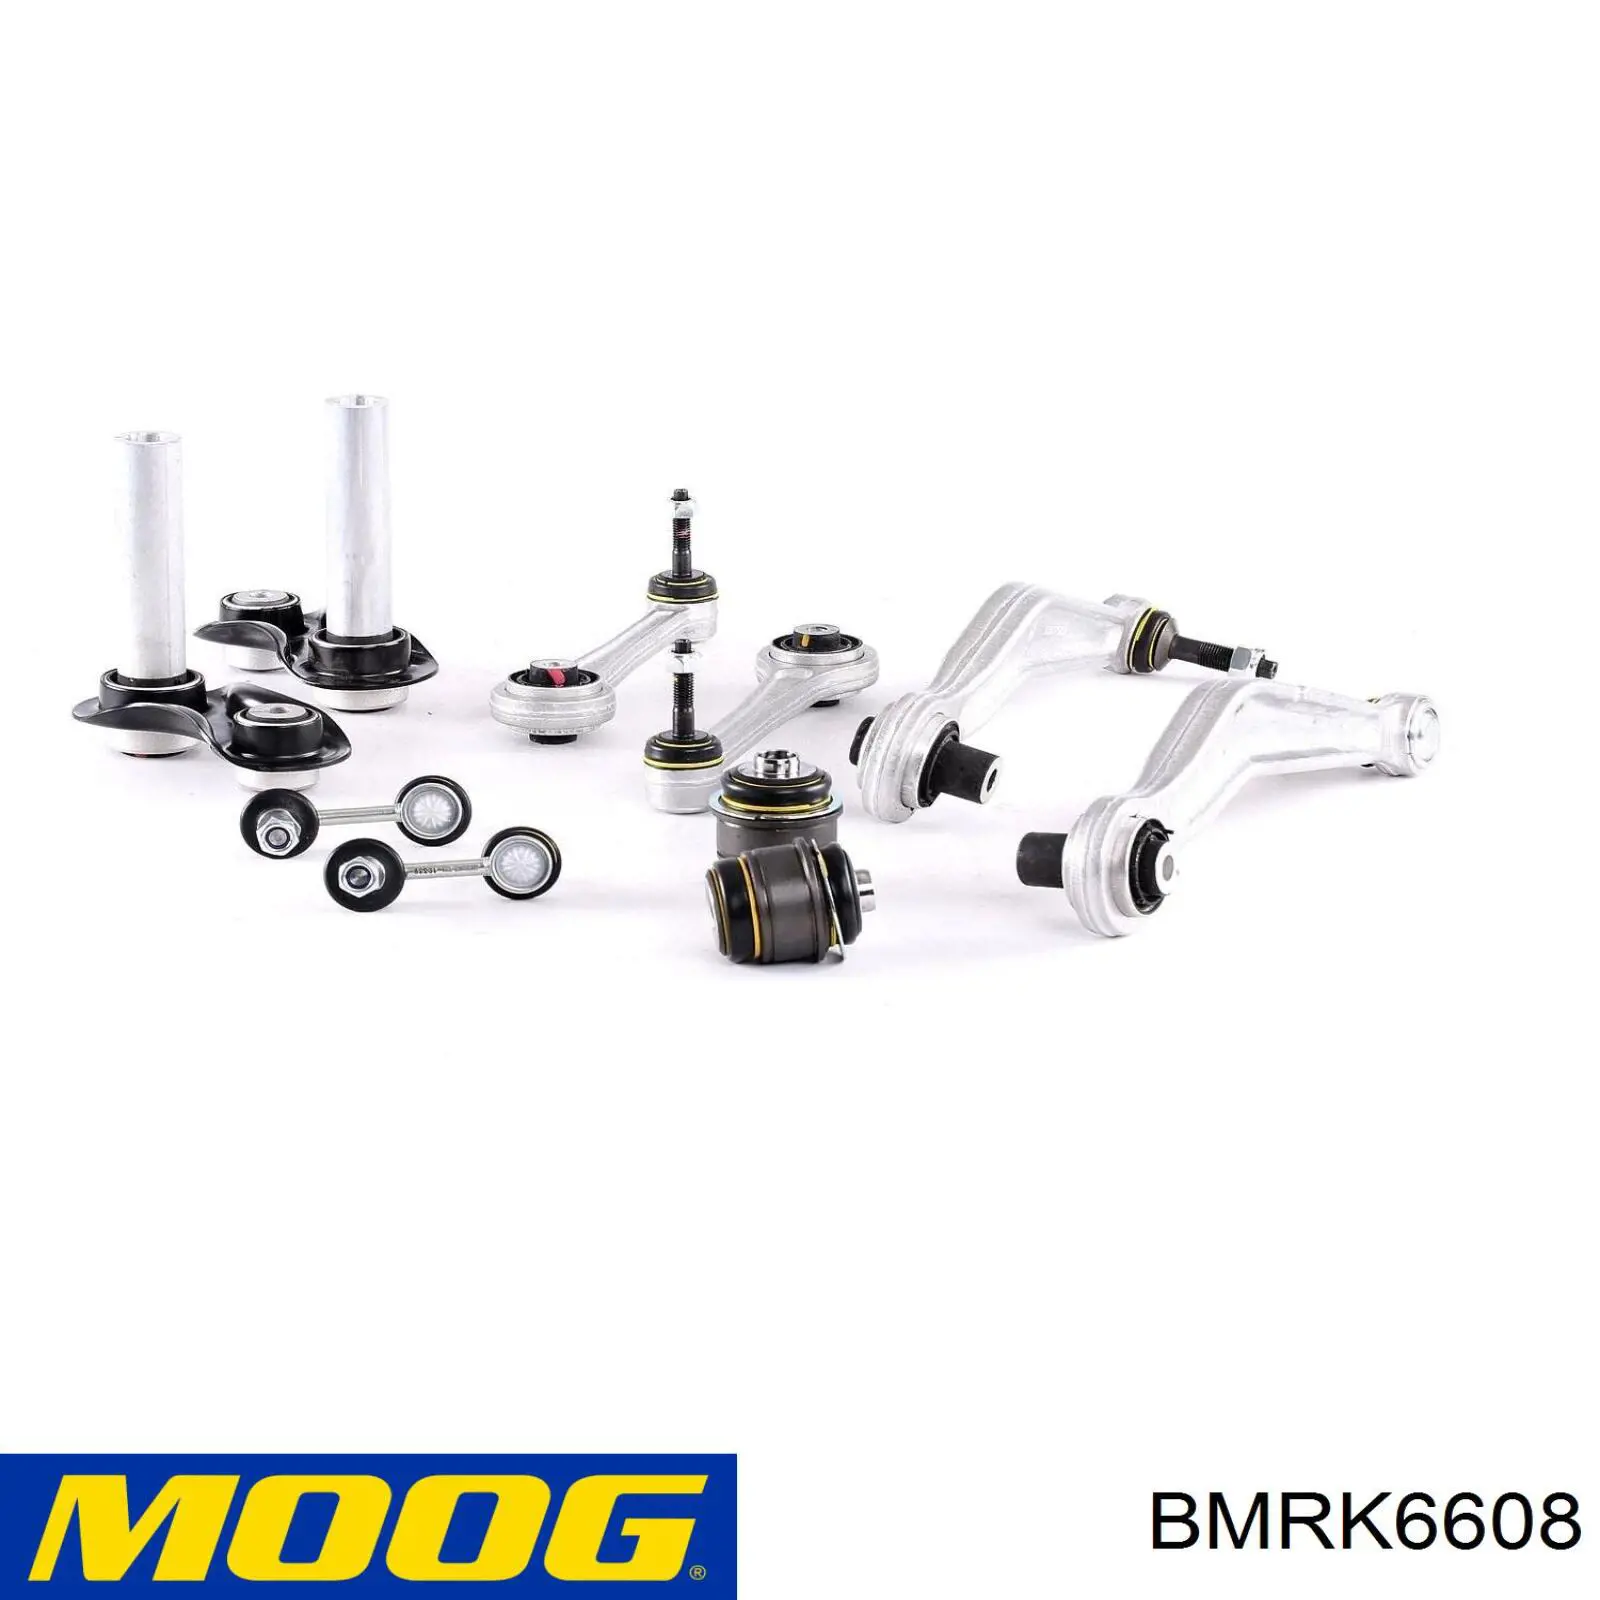 BMRK6608 Moog kit para brazo suspension trasera